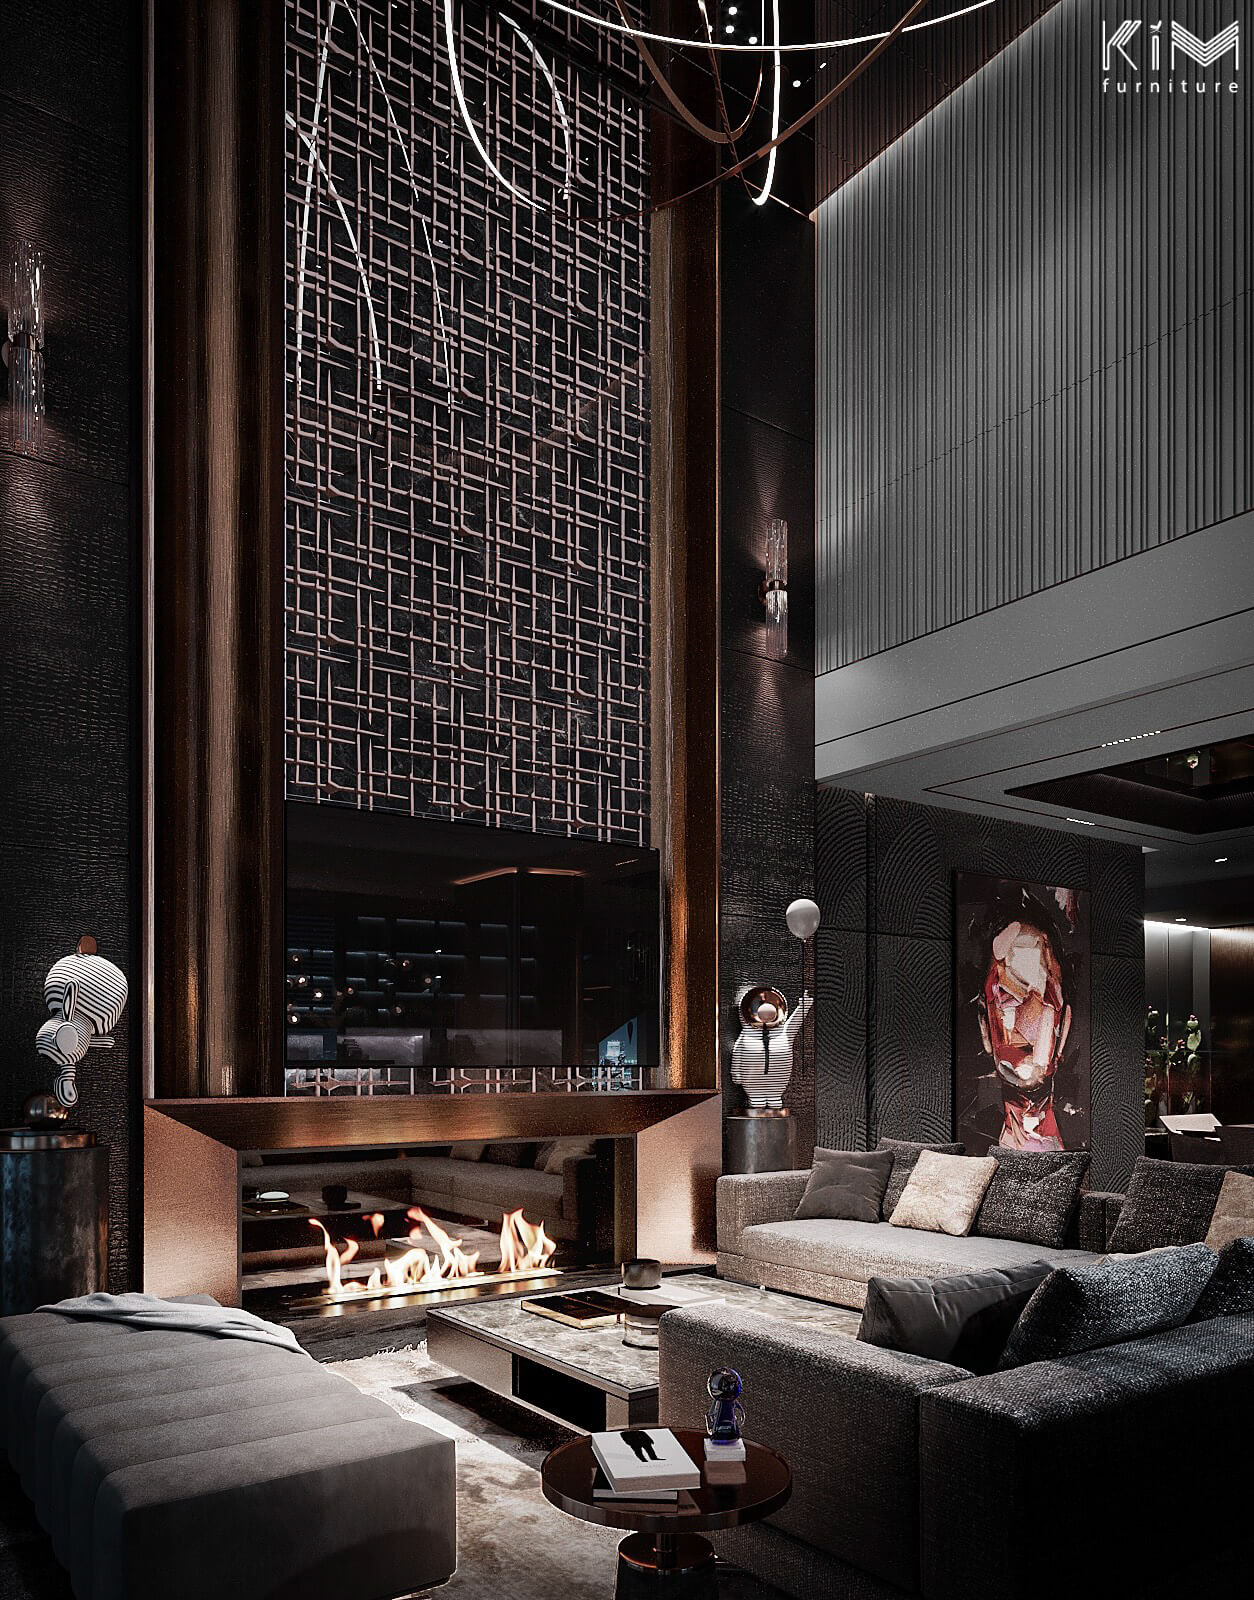 Thiết kế Penthouse Ancora của KIM sử dụng mẫu lam gỗ phòng khách xám